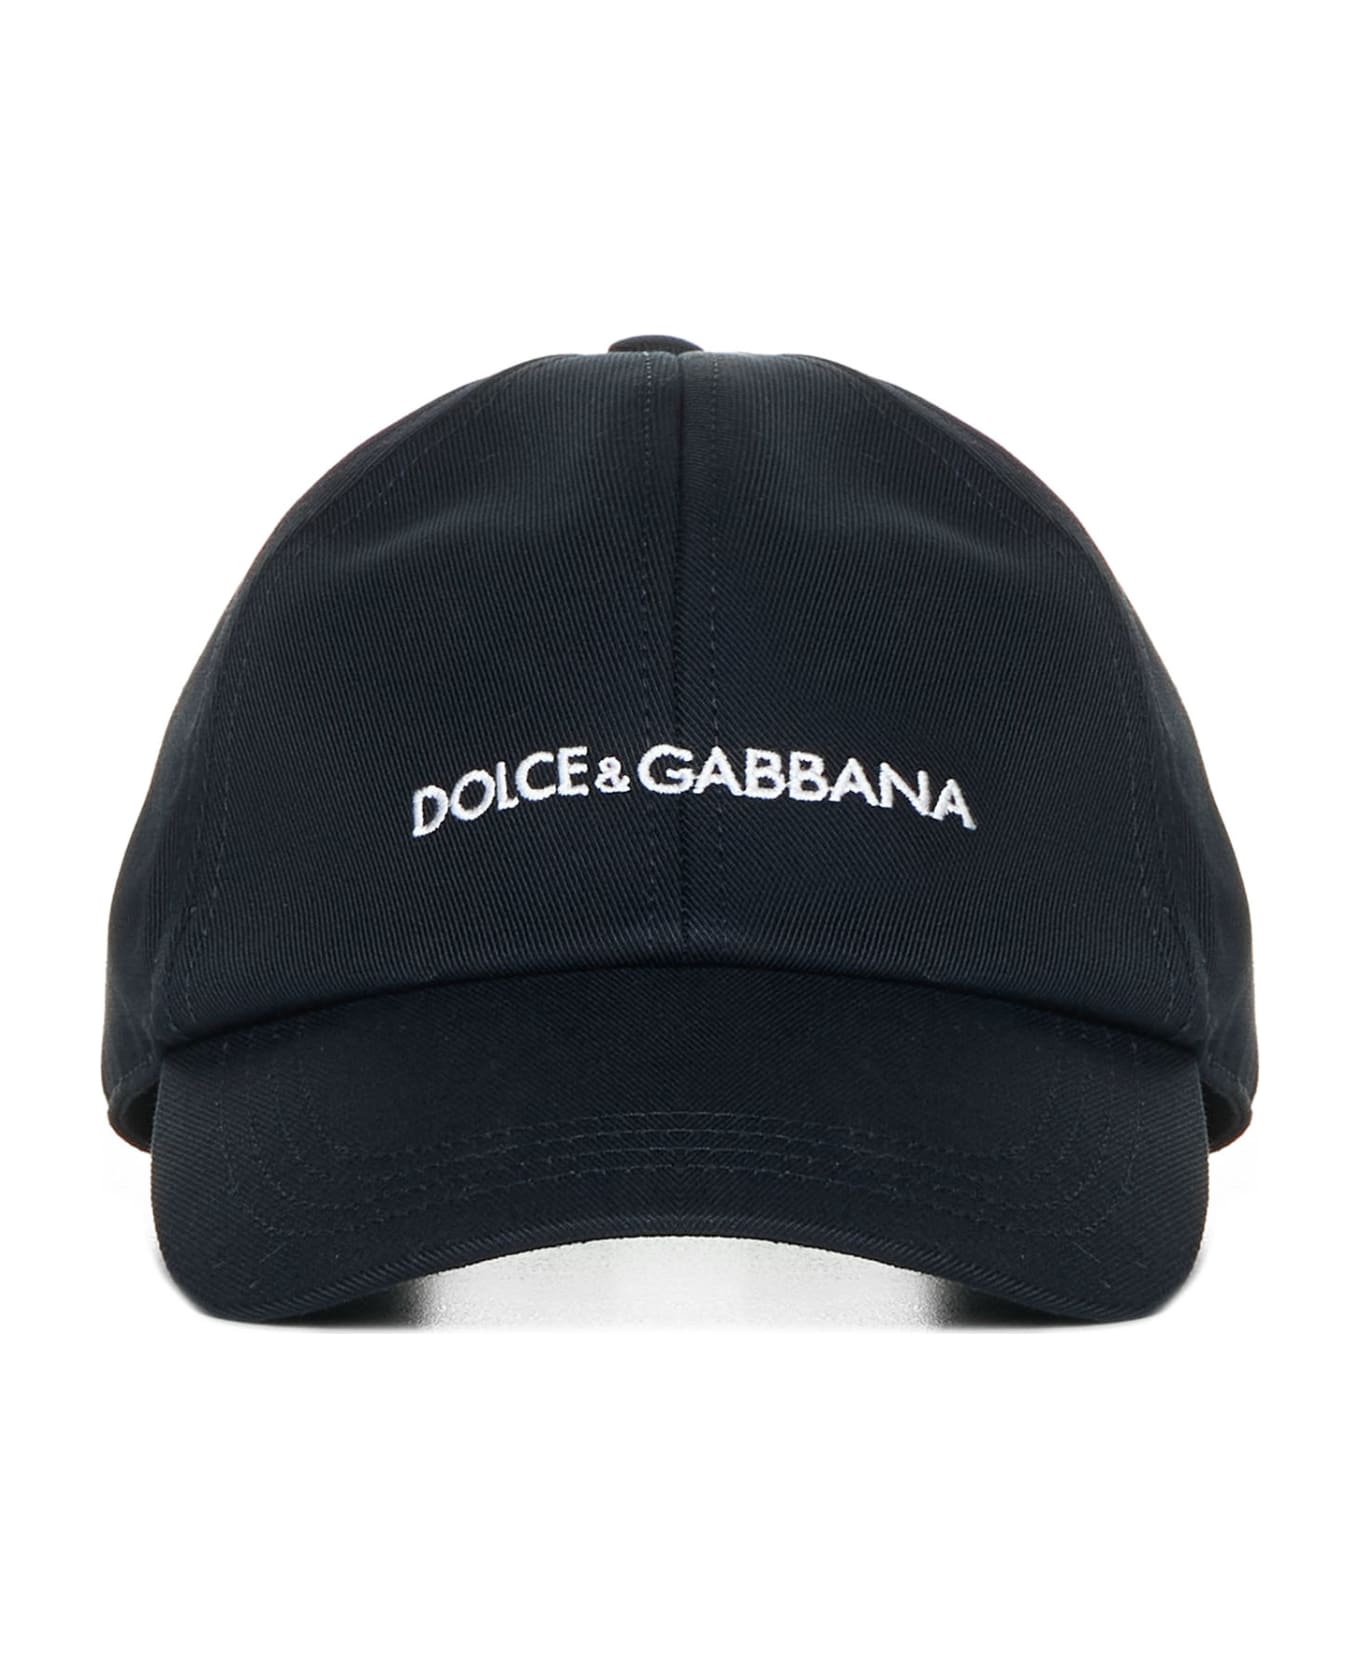 Dolce & Gabbana Cotton Hat - Black 帽子